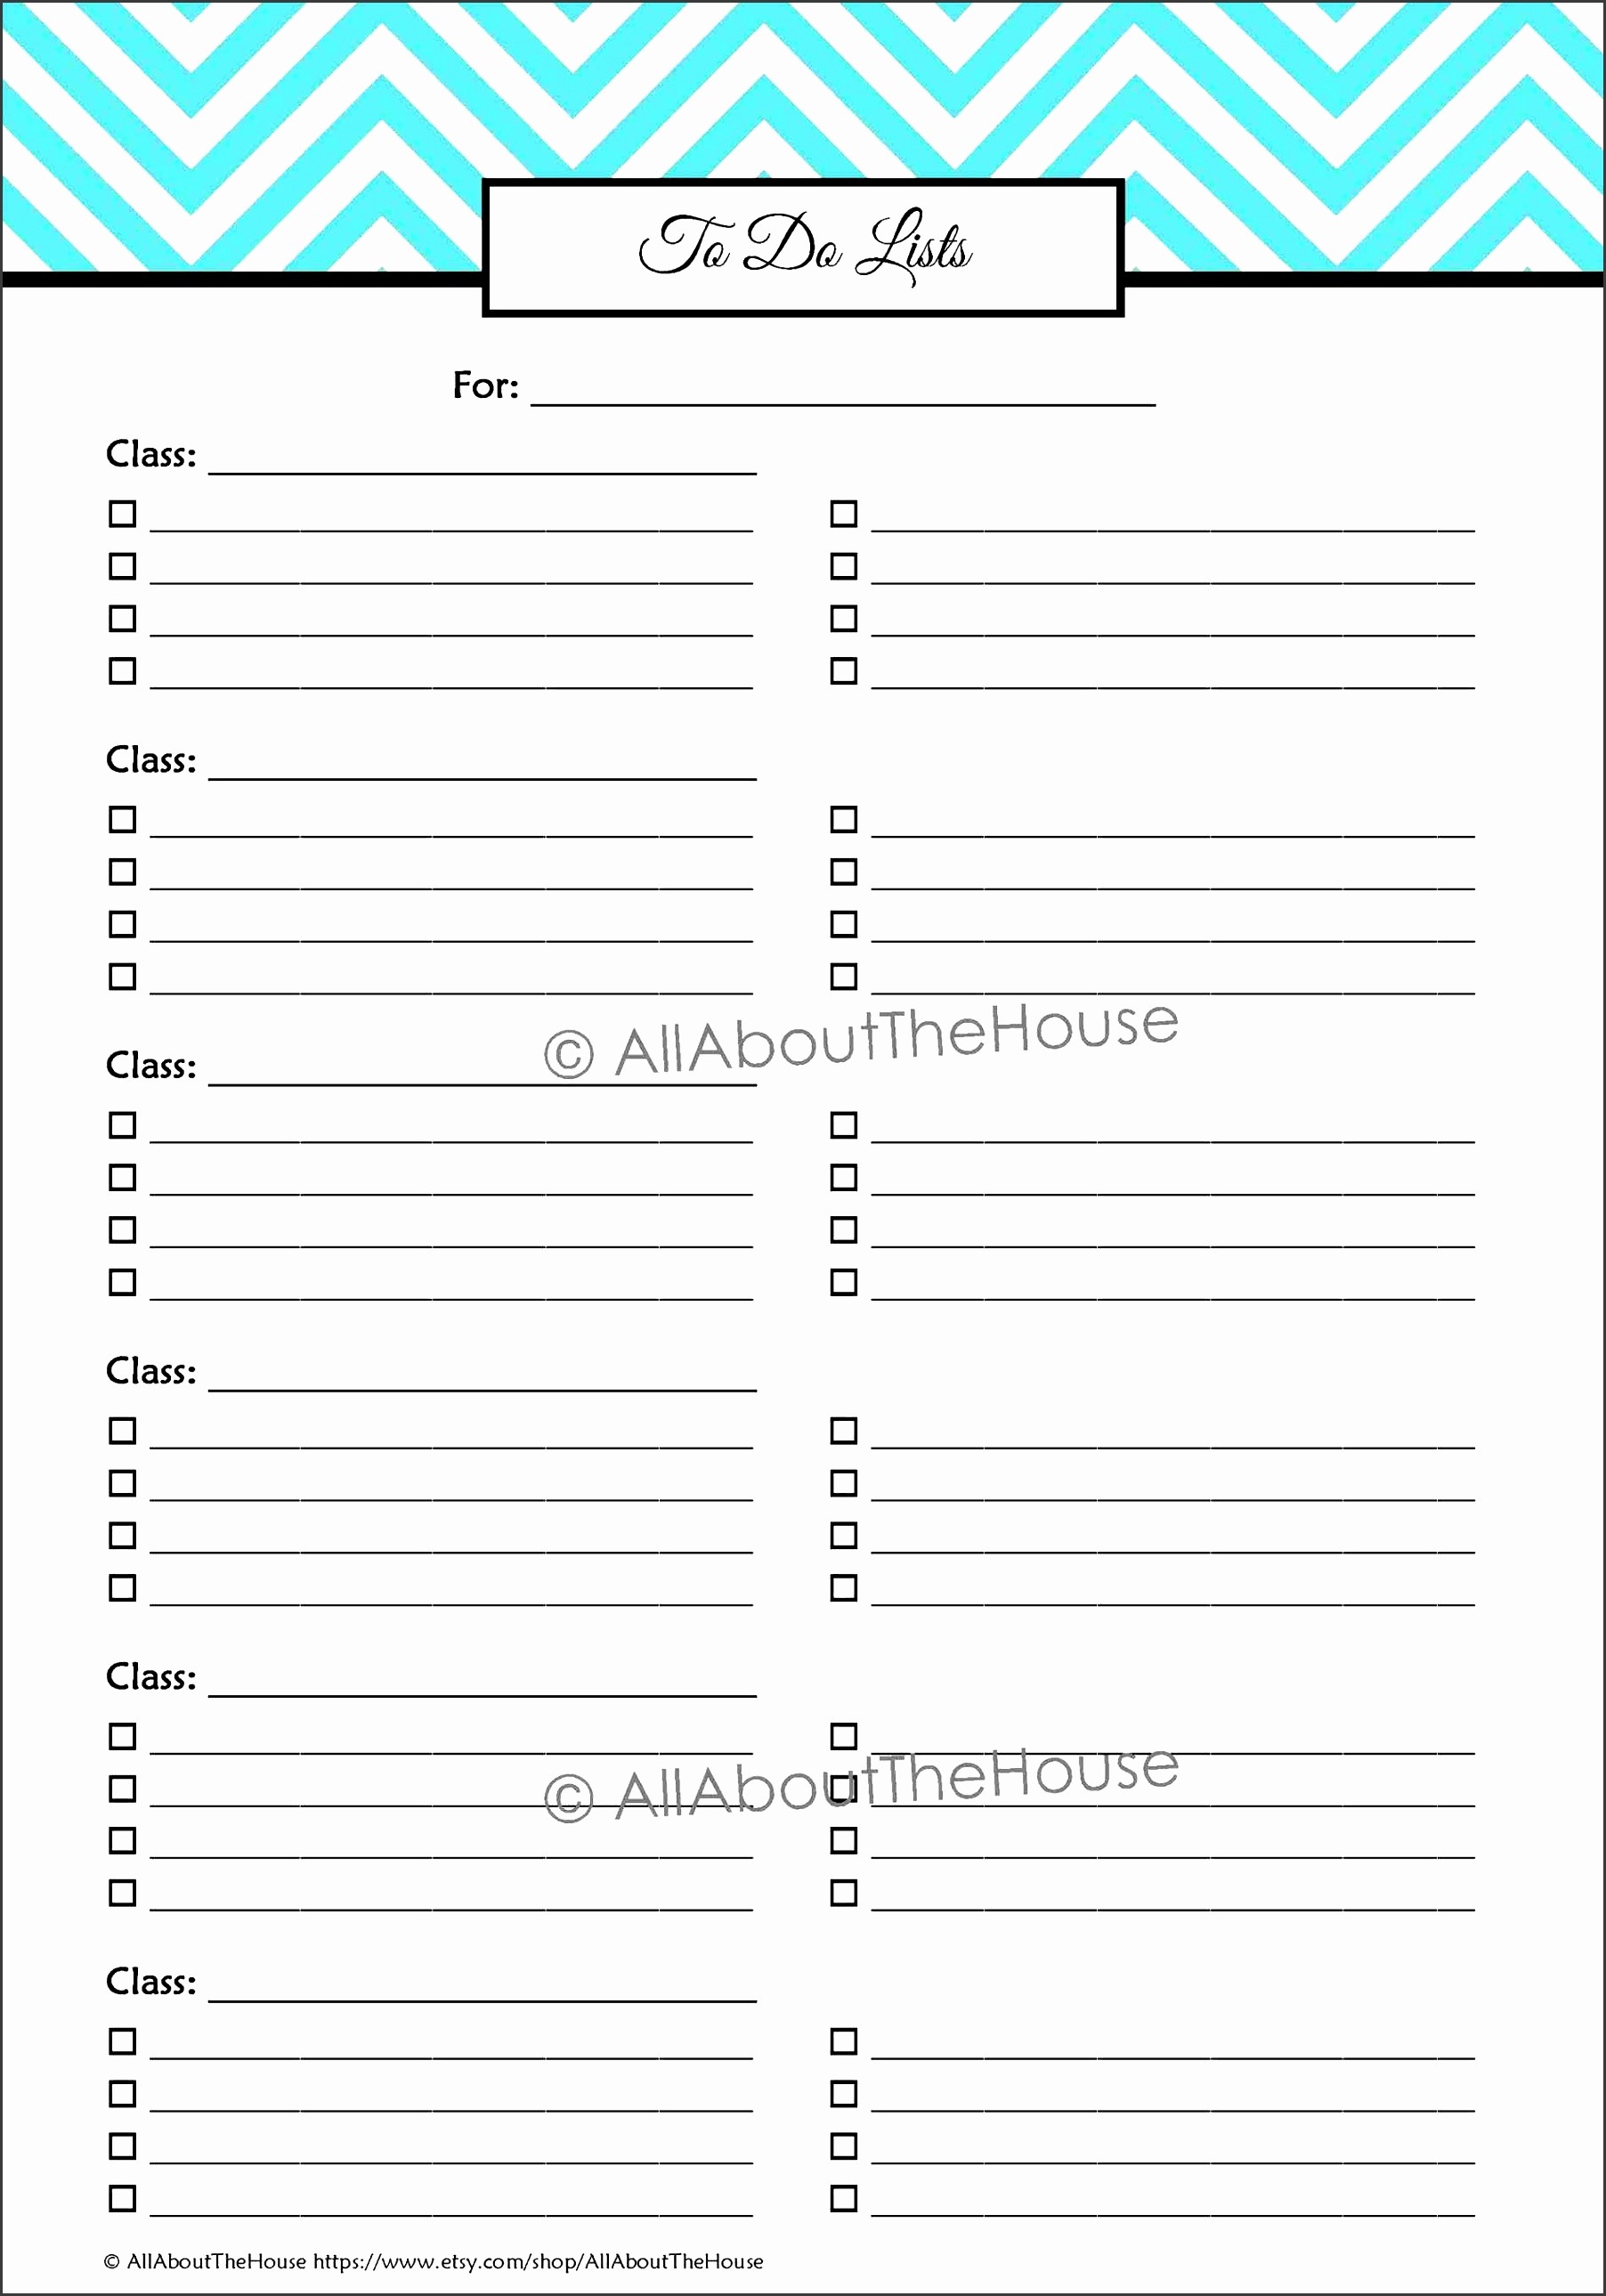 Daily Homework assignment Sheet Template Fresh 10 Printable Student assignment Planner Sampletemplatess